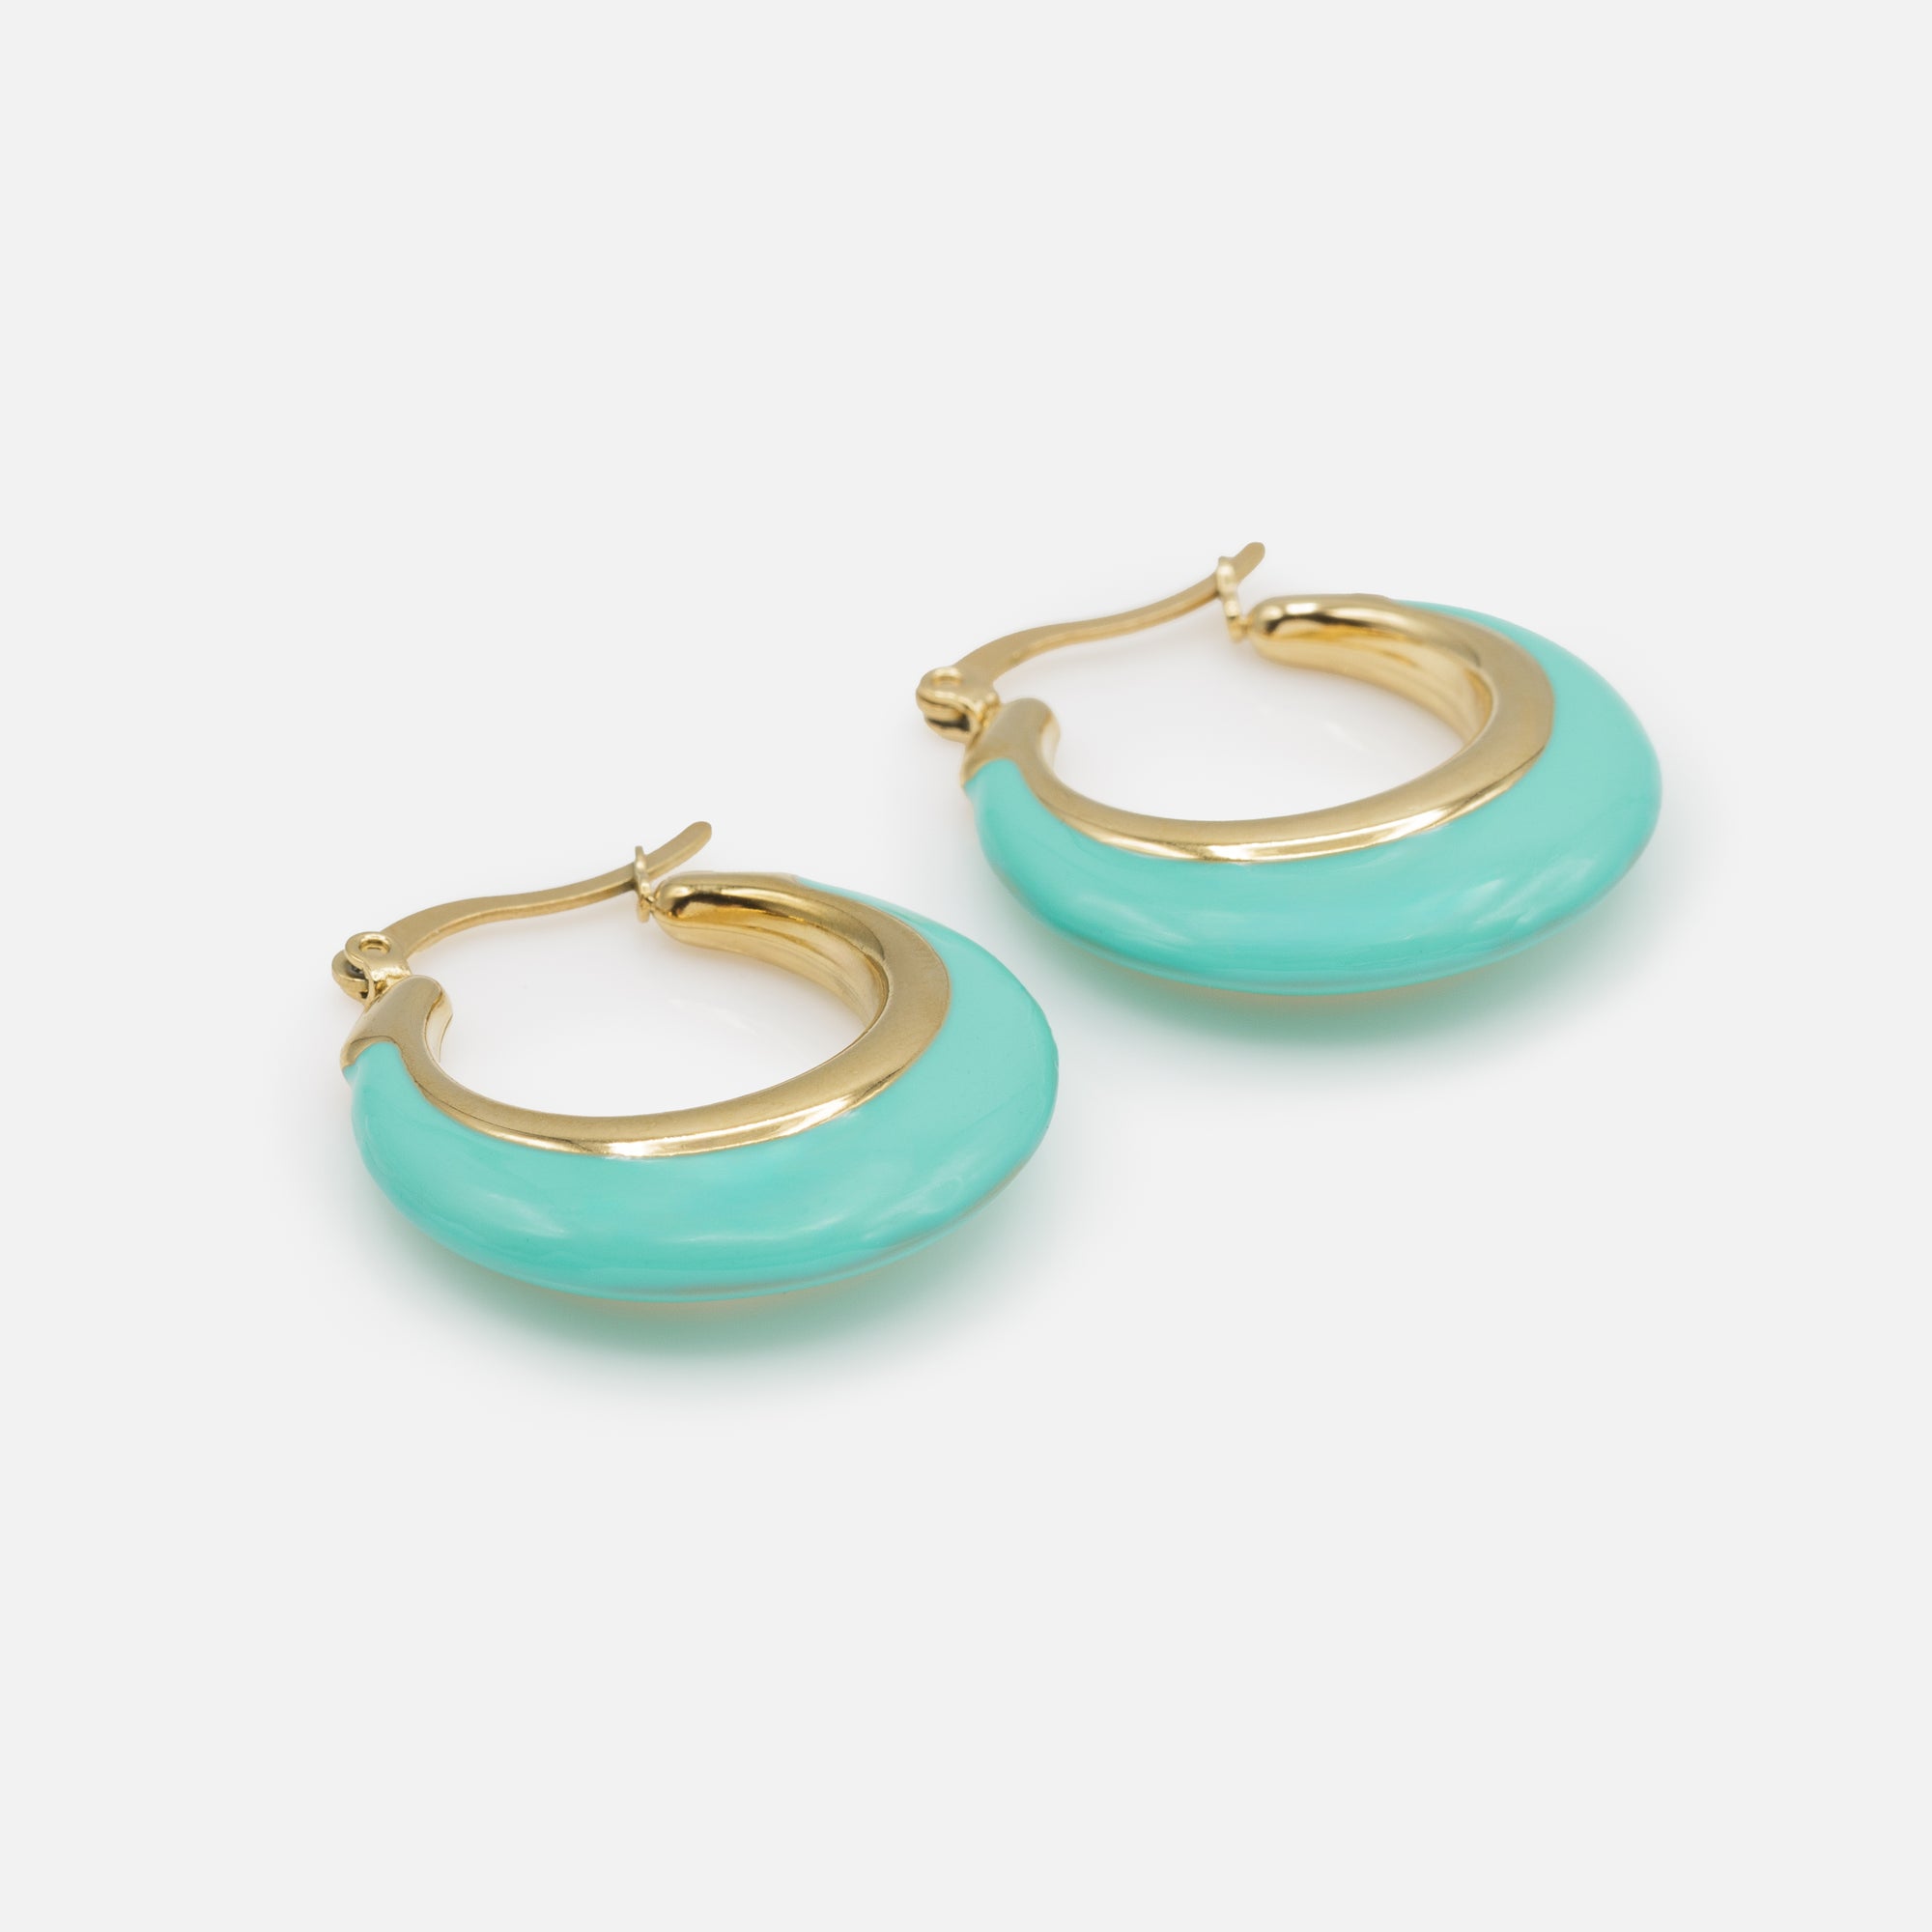 Boucles d'oreilles anneaux dorés à large base turquoise en acier inoxydable